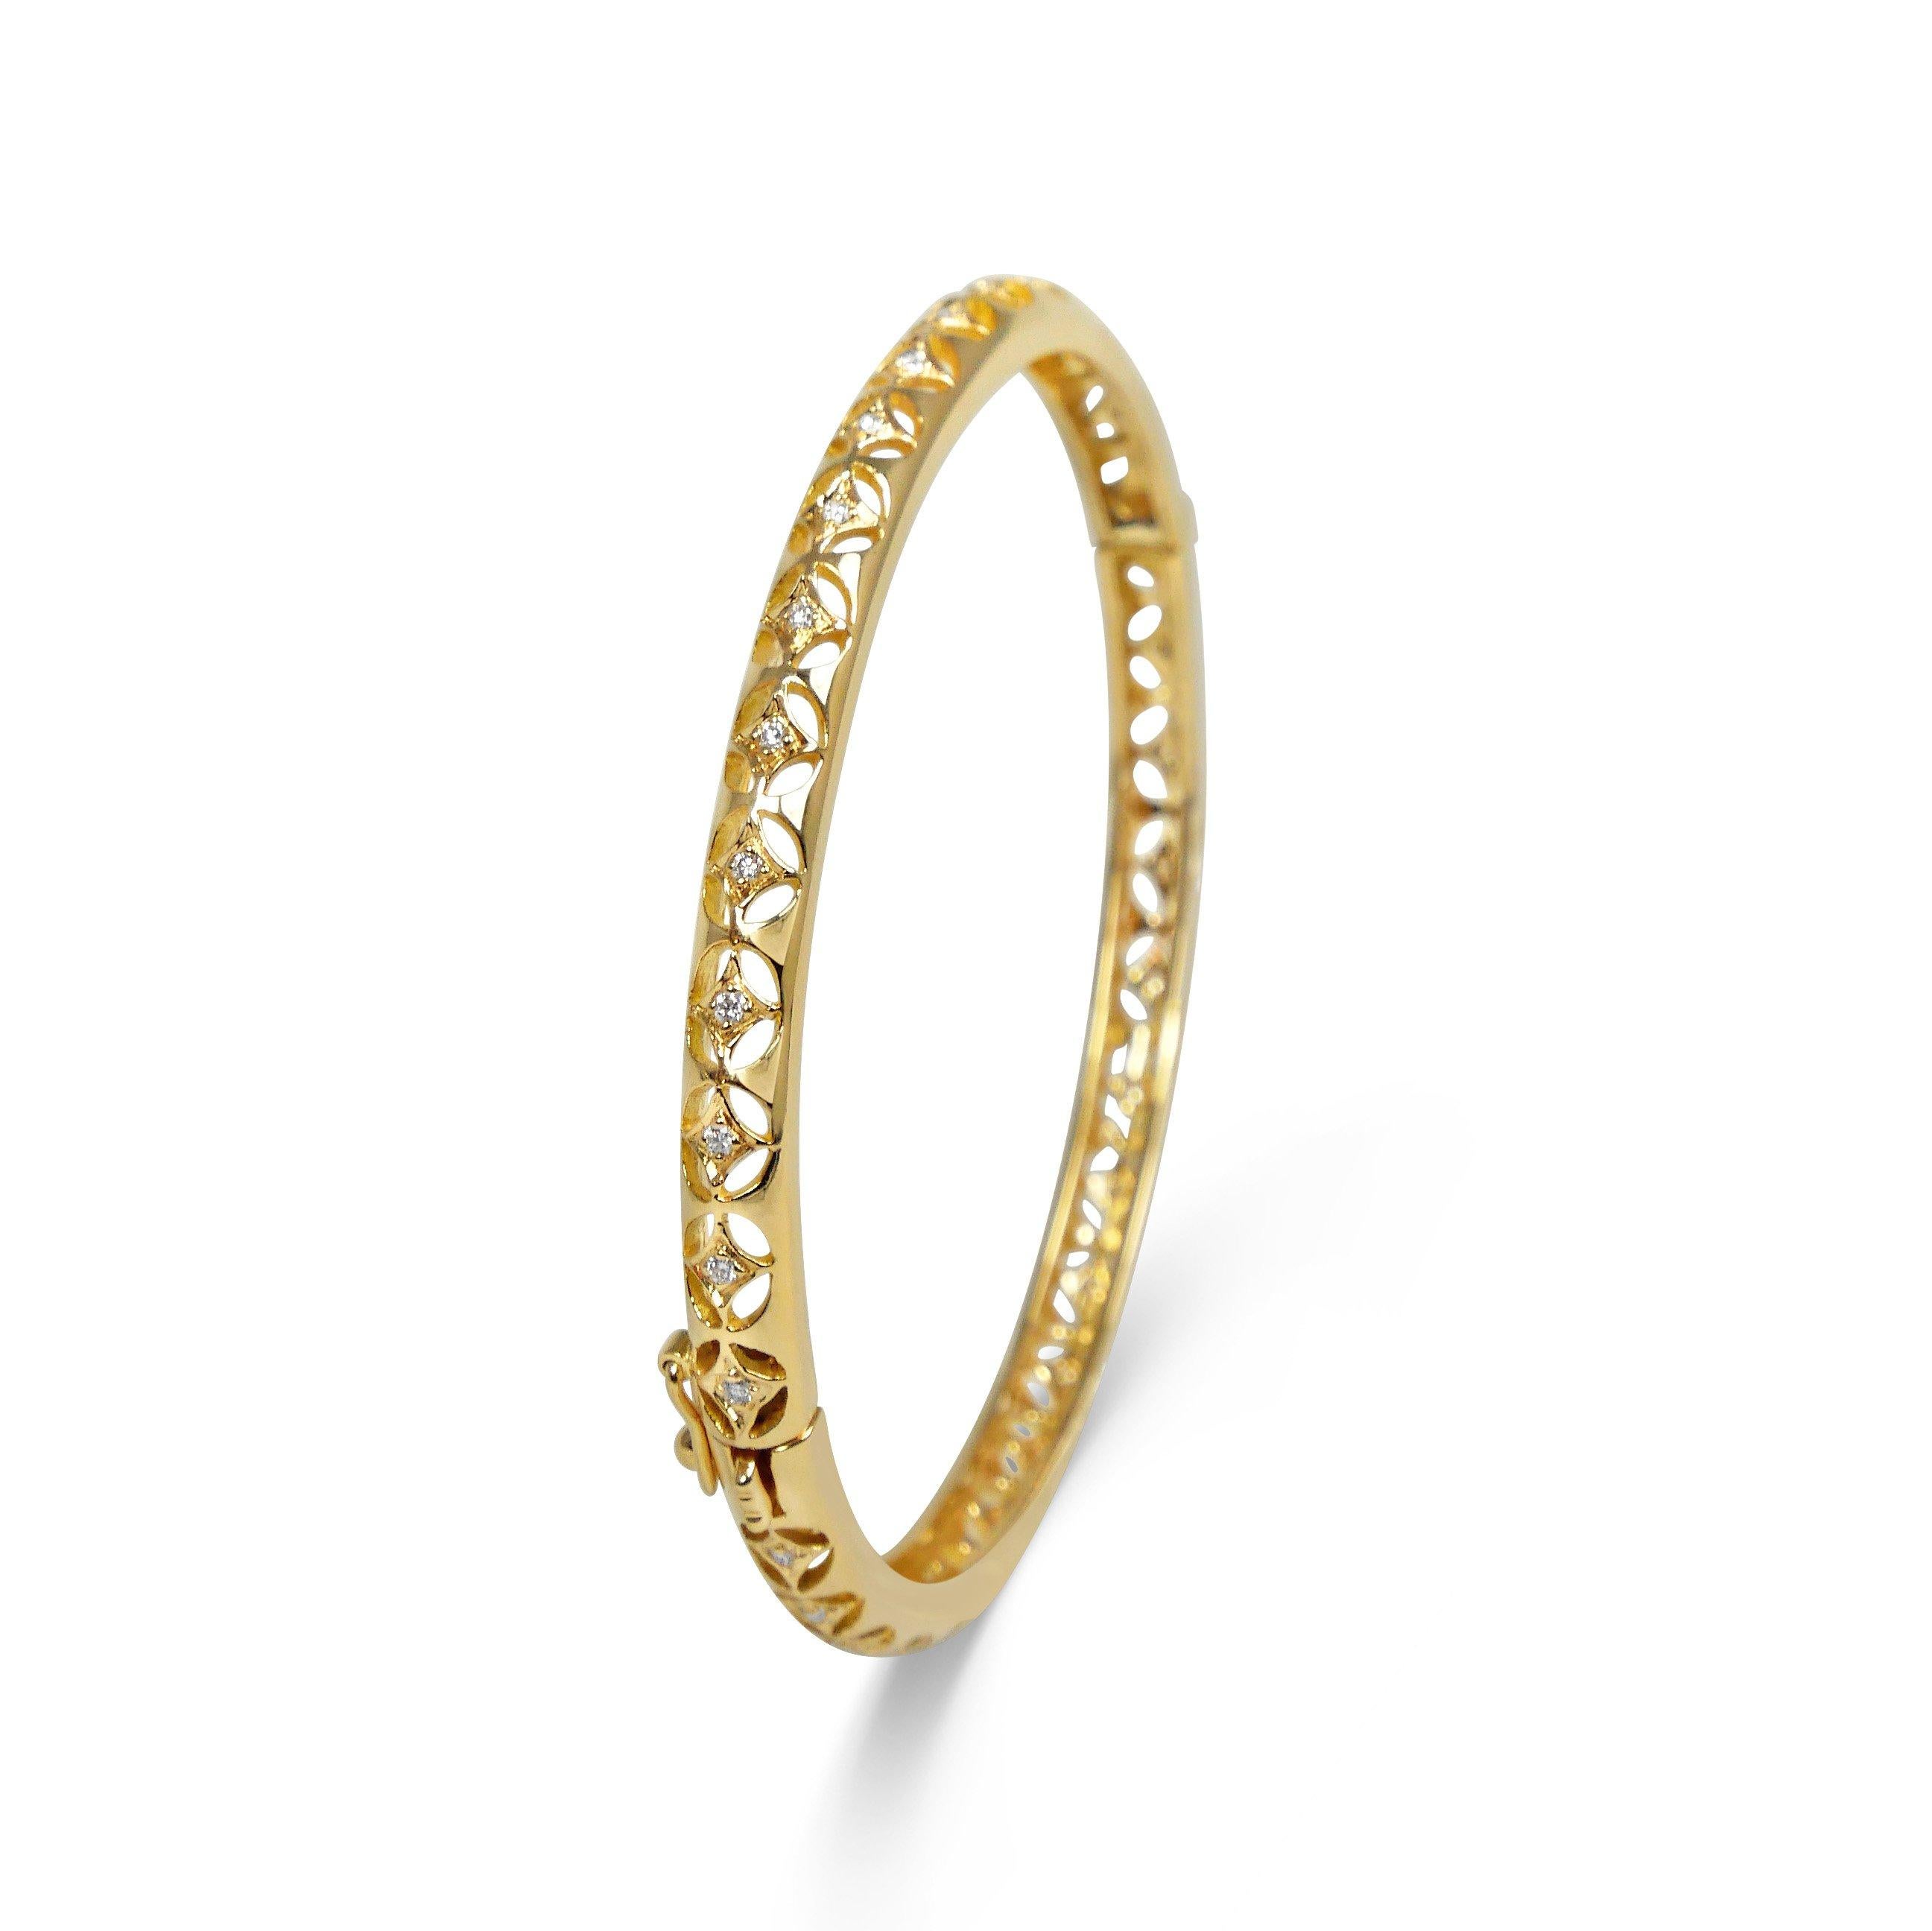 Délicat bracelet bangle en or jaune 18k et diamants blancs percé à la main. Peut être porté aussi bien avec une tenue décontractée pour un look de tous les jours qu'avec une tenue plus élégante. La dentelle en or 18 carats, signature de notre